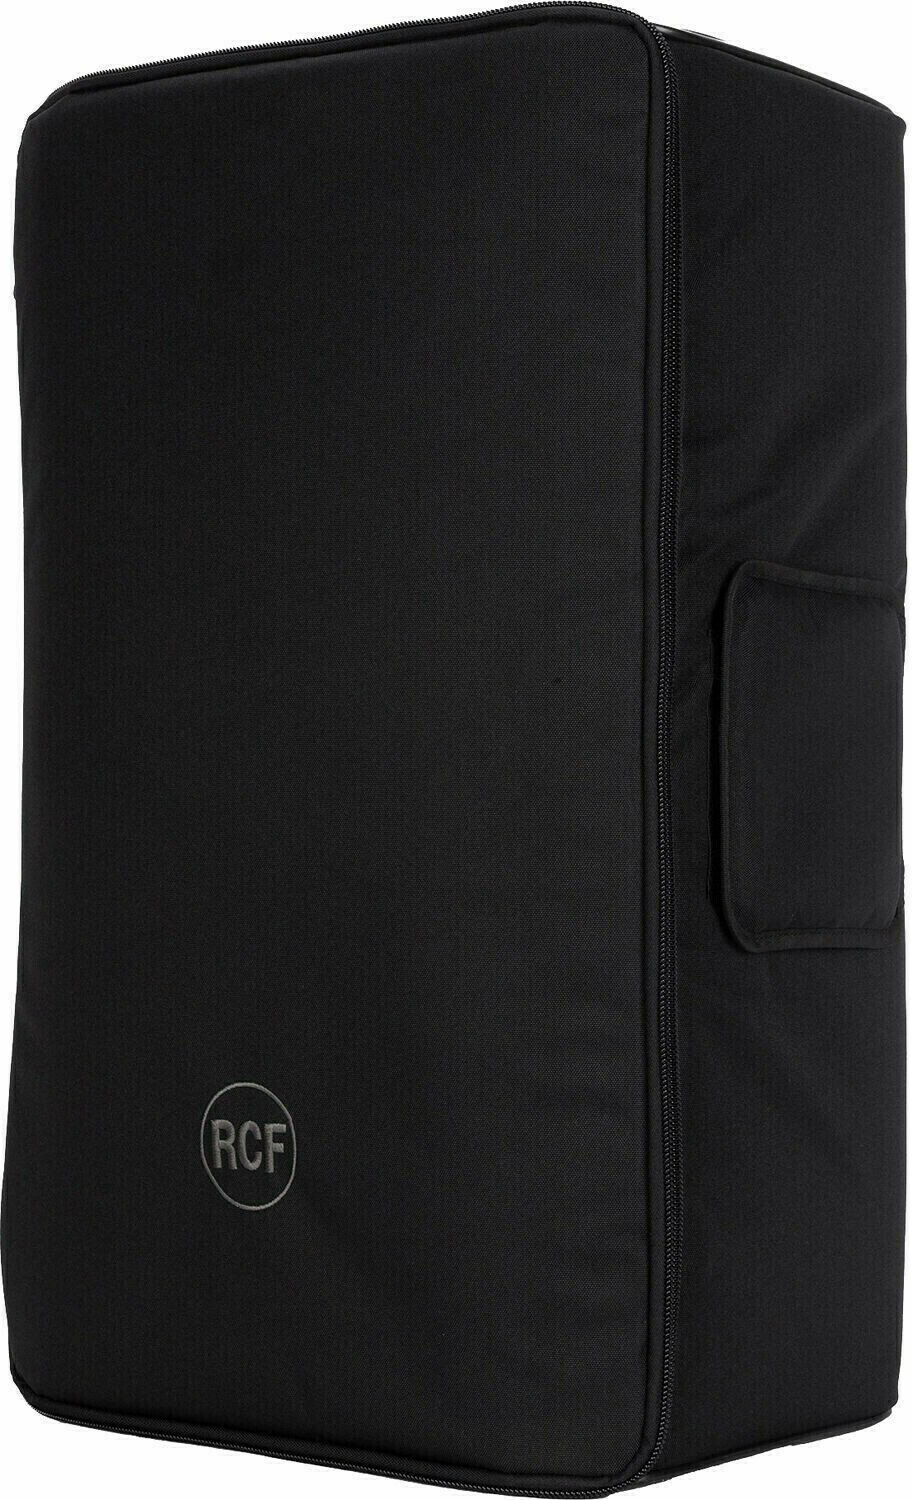 Bag for loudspeakers RCF CVR ART 915 Bag for loudspeakers